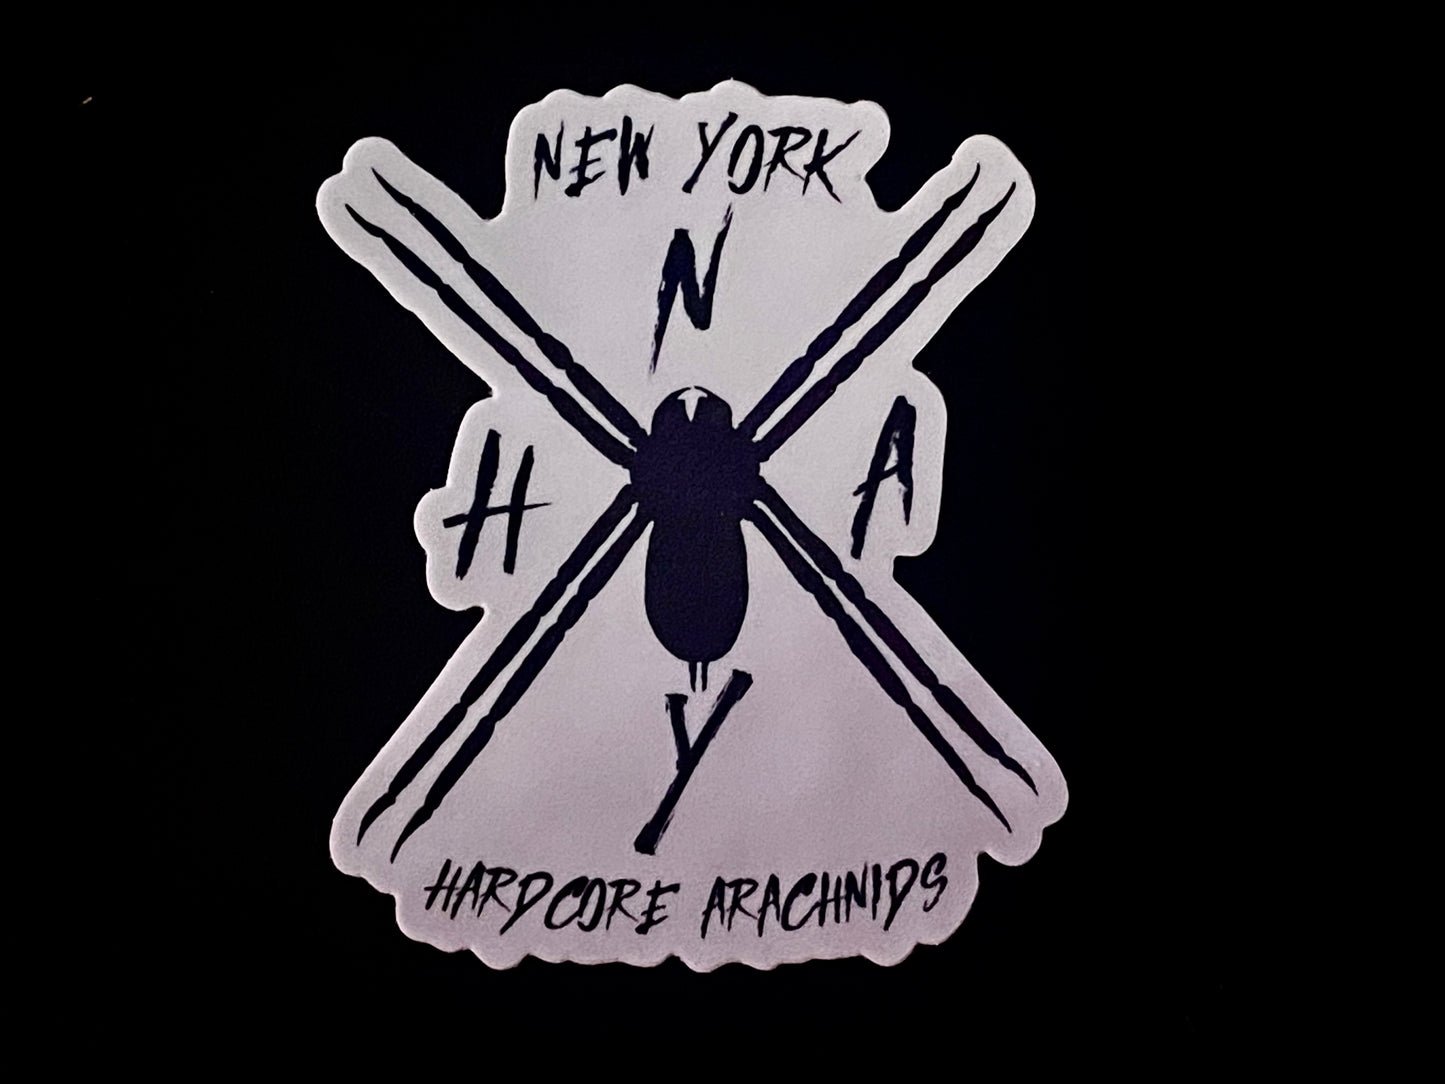 3” Vinyl stickers (NY Hardcore Arachnids logo)